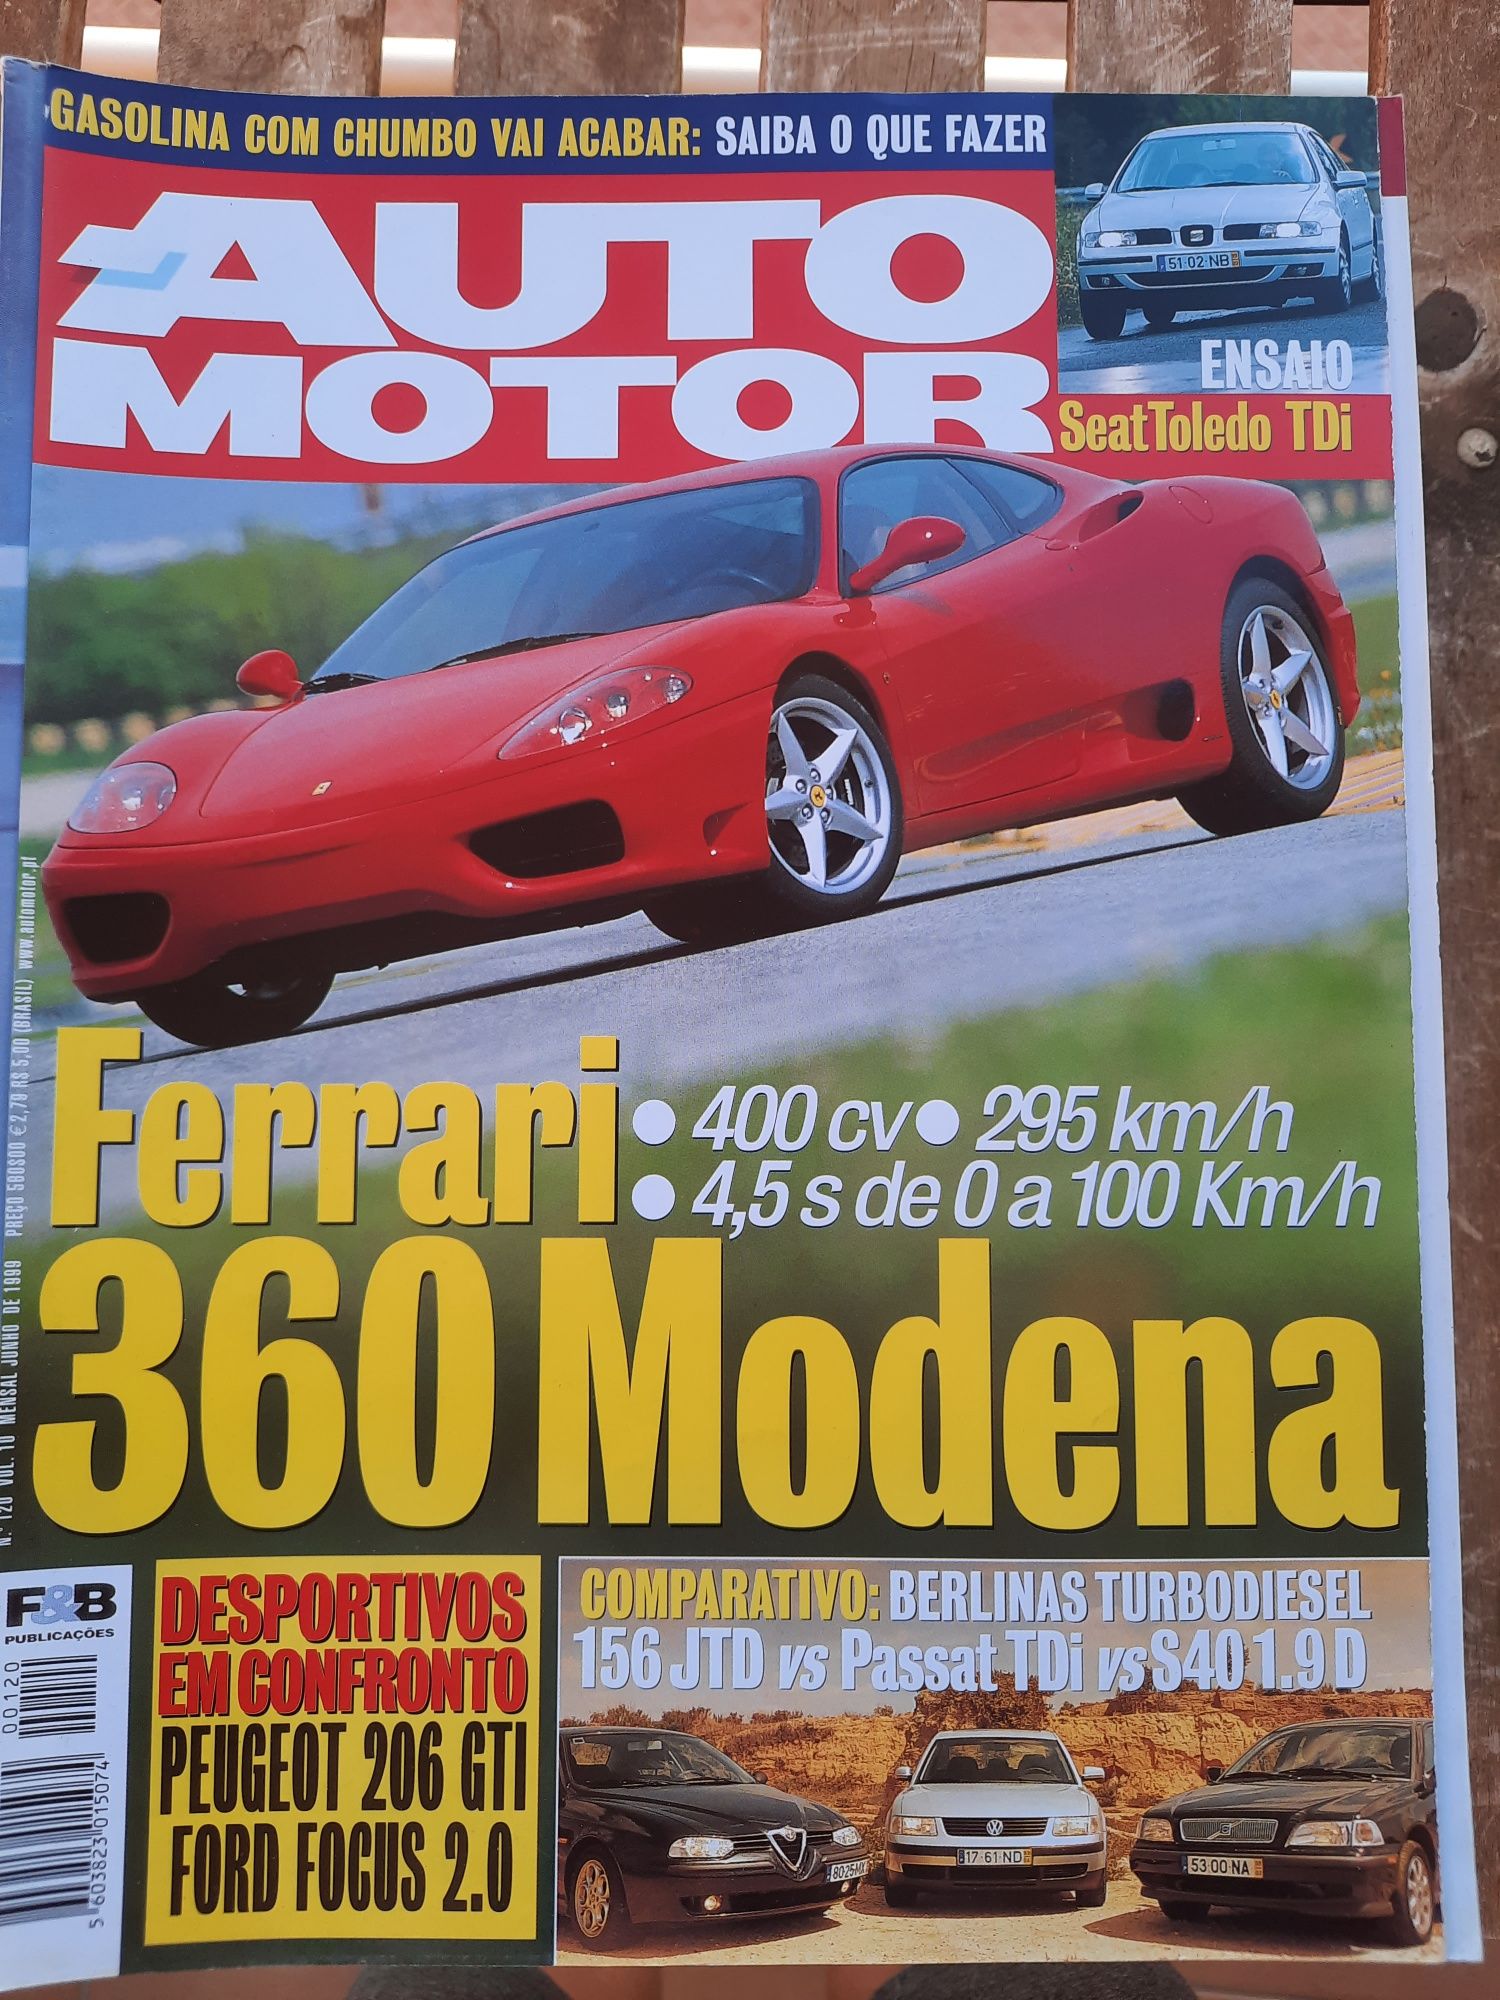 Revistas antigas "Auto Motor" - lote ou individual